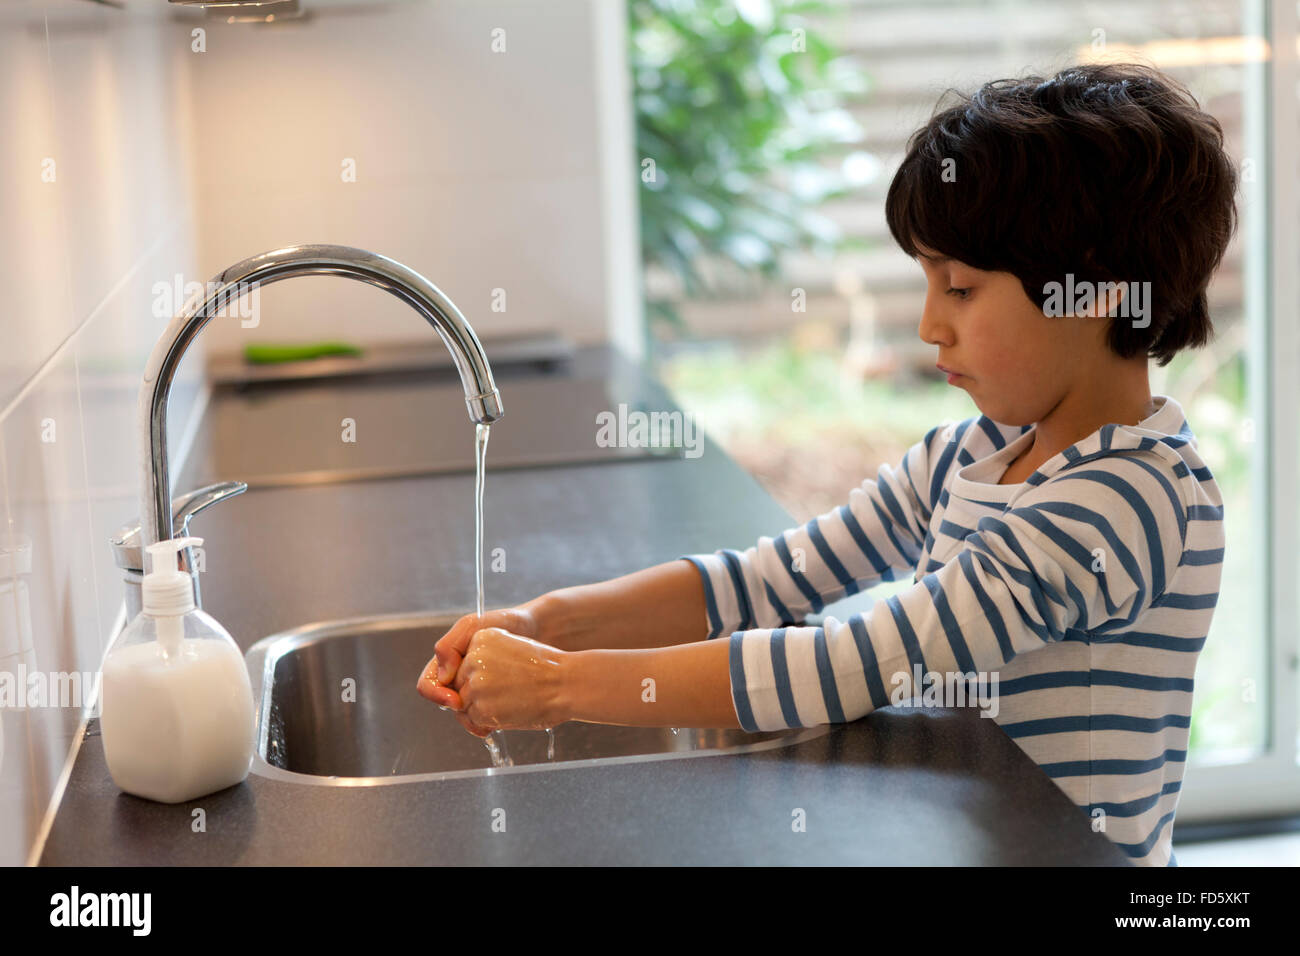 Niño de ocho años el lavado de manos en la cocina Foto de stock